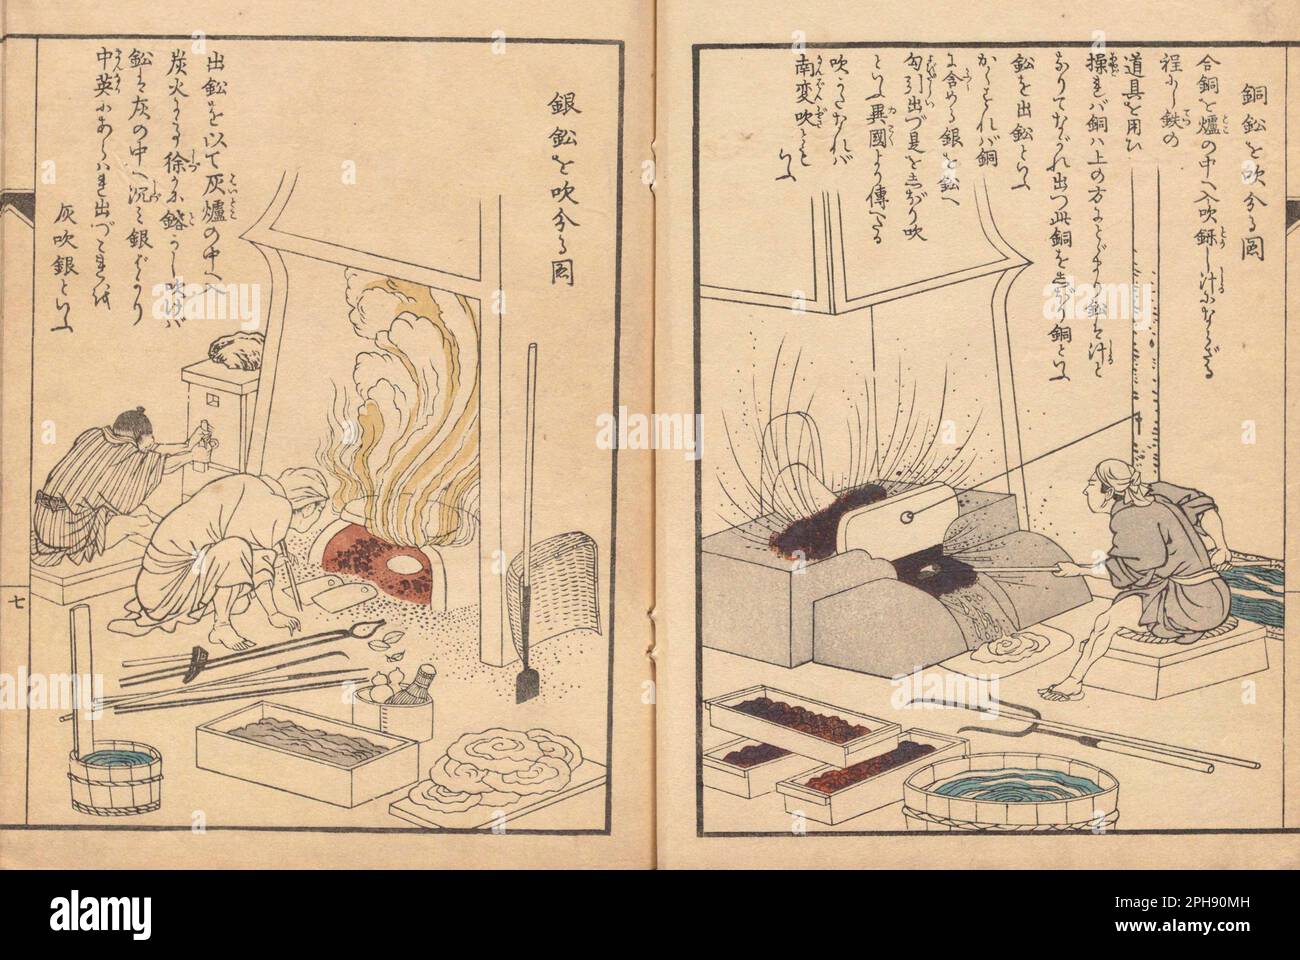 Illustrazioni da 'Kodouzuroku', redattore Masuda Kou (1769-1821) , artista Niwa Toukei (1760-1822), fondato nel 1811-1816. Mostra tecniche di raffinazione del rame. Nanbanbuki destro (separazione del rame che include argento e piombo), gin Haibuki sinistro (separazione dell'argento e del piombo) Foto Stock